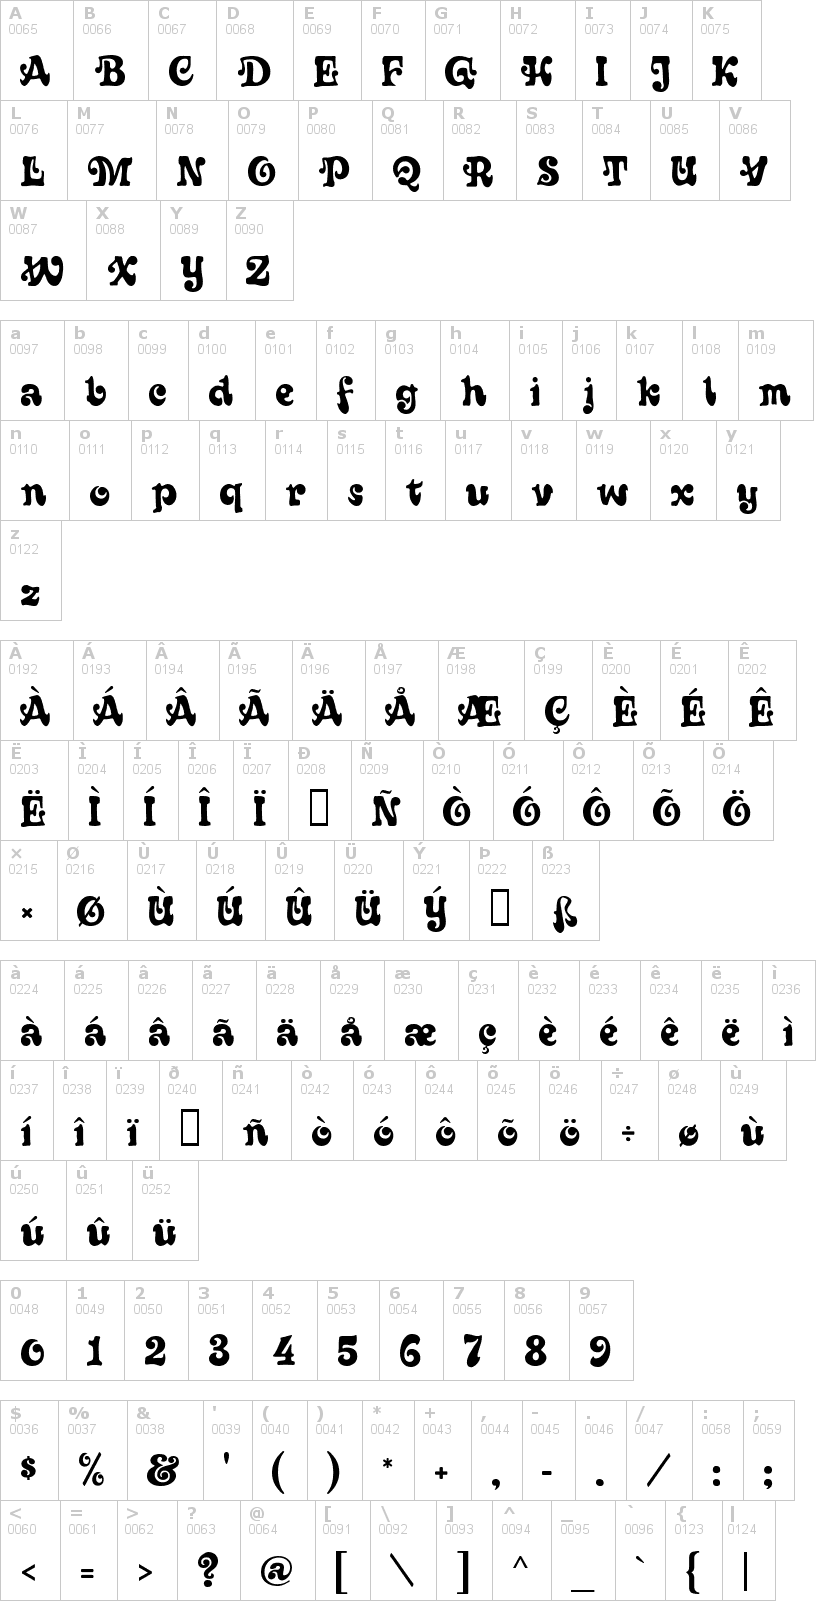 Lettere dell'alfabeto del font sixties con le quali è possibile realizzare adesivi prespaziati